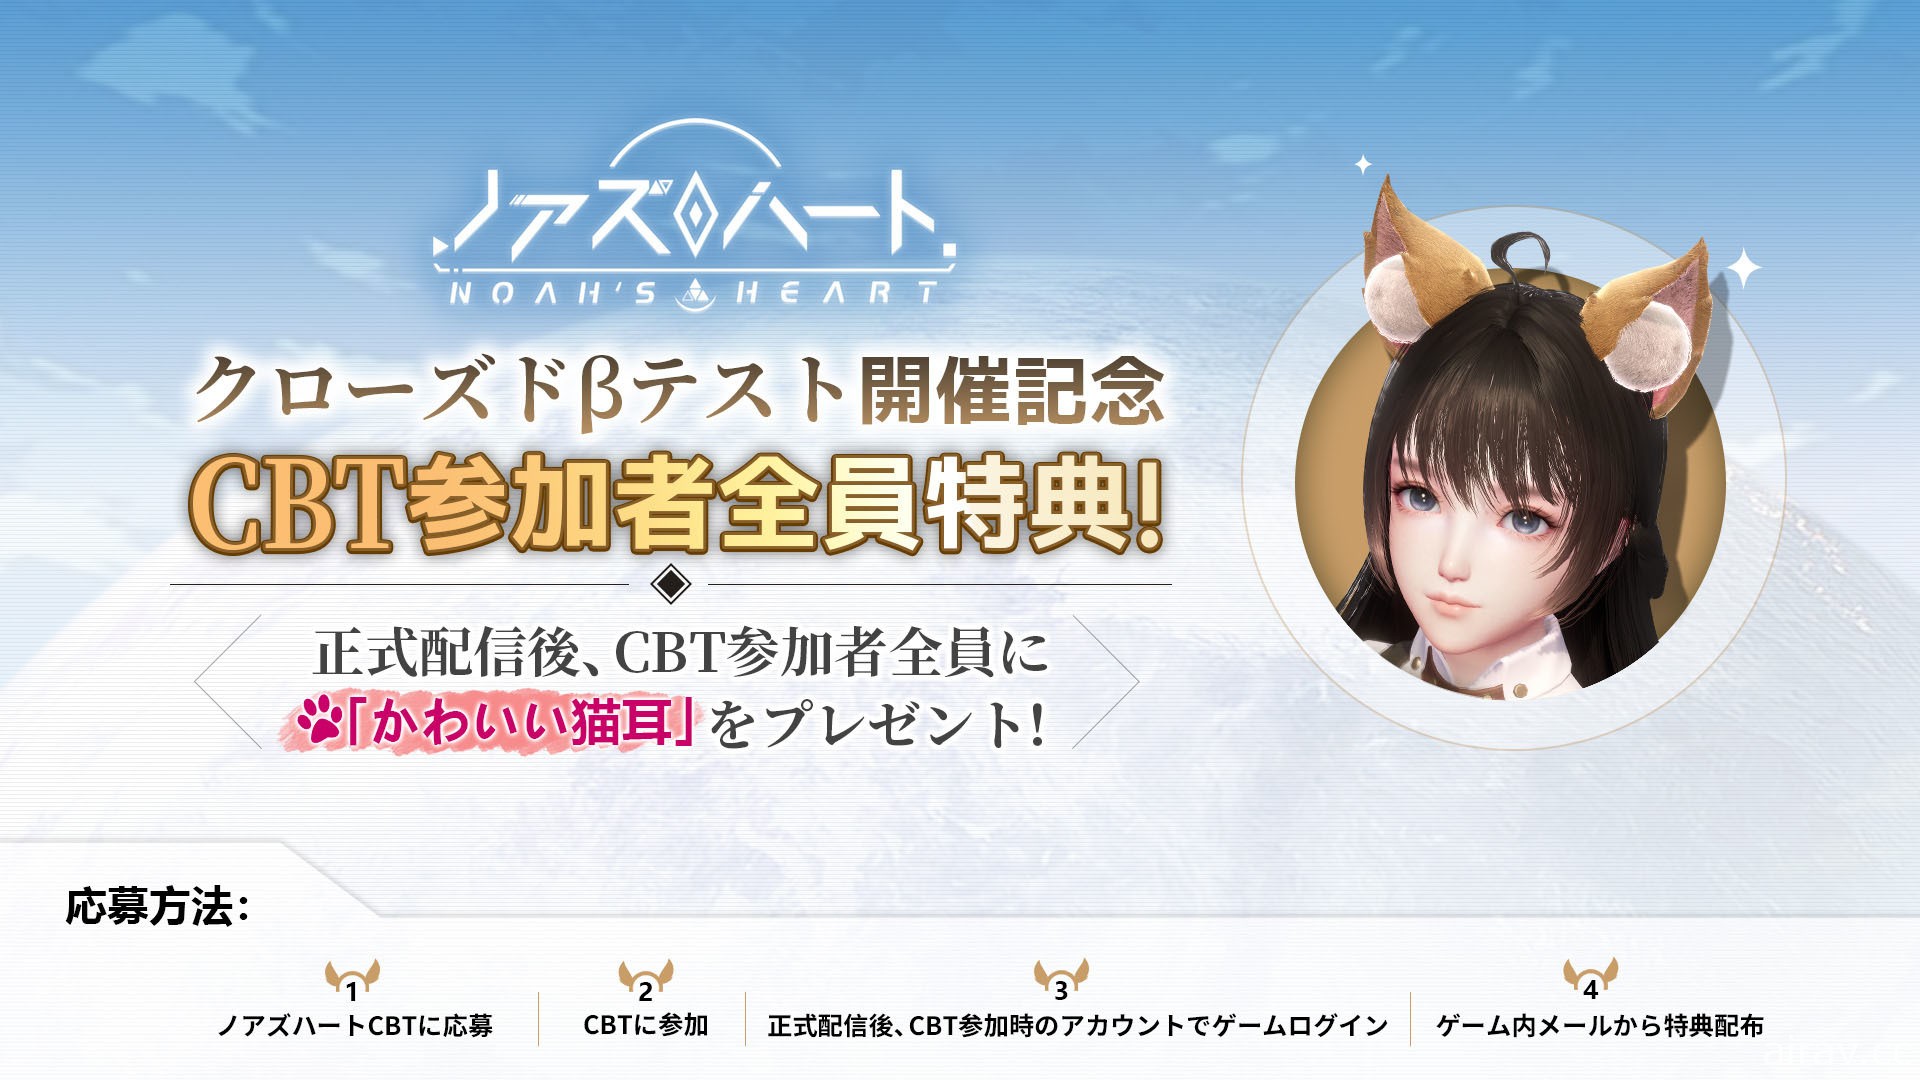 星球探索型開放世界 RPG《諾亞之心》於日本展開 CBT 招募